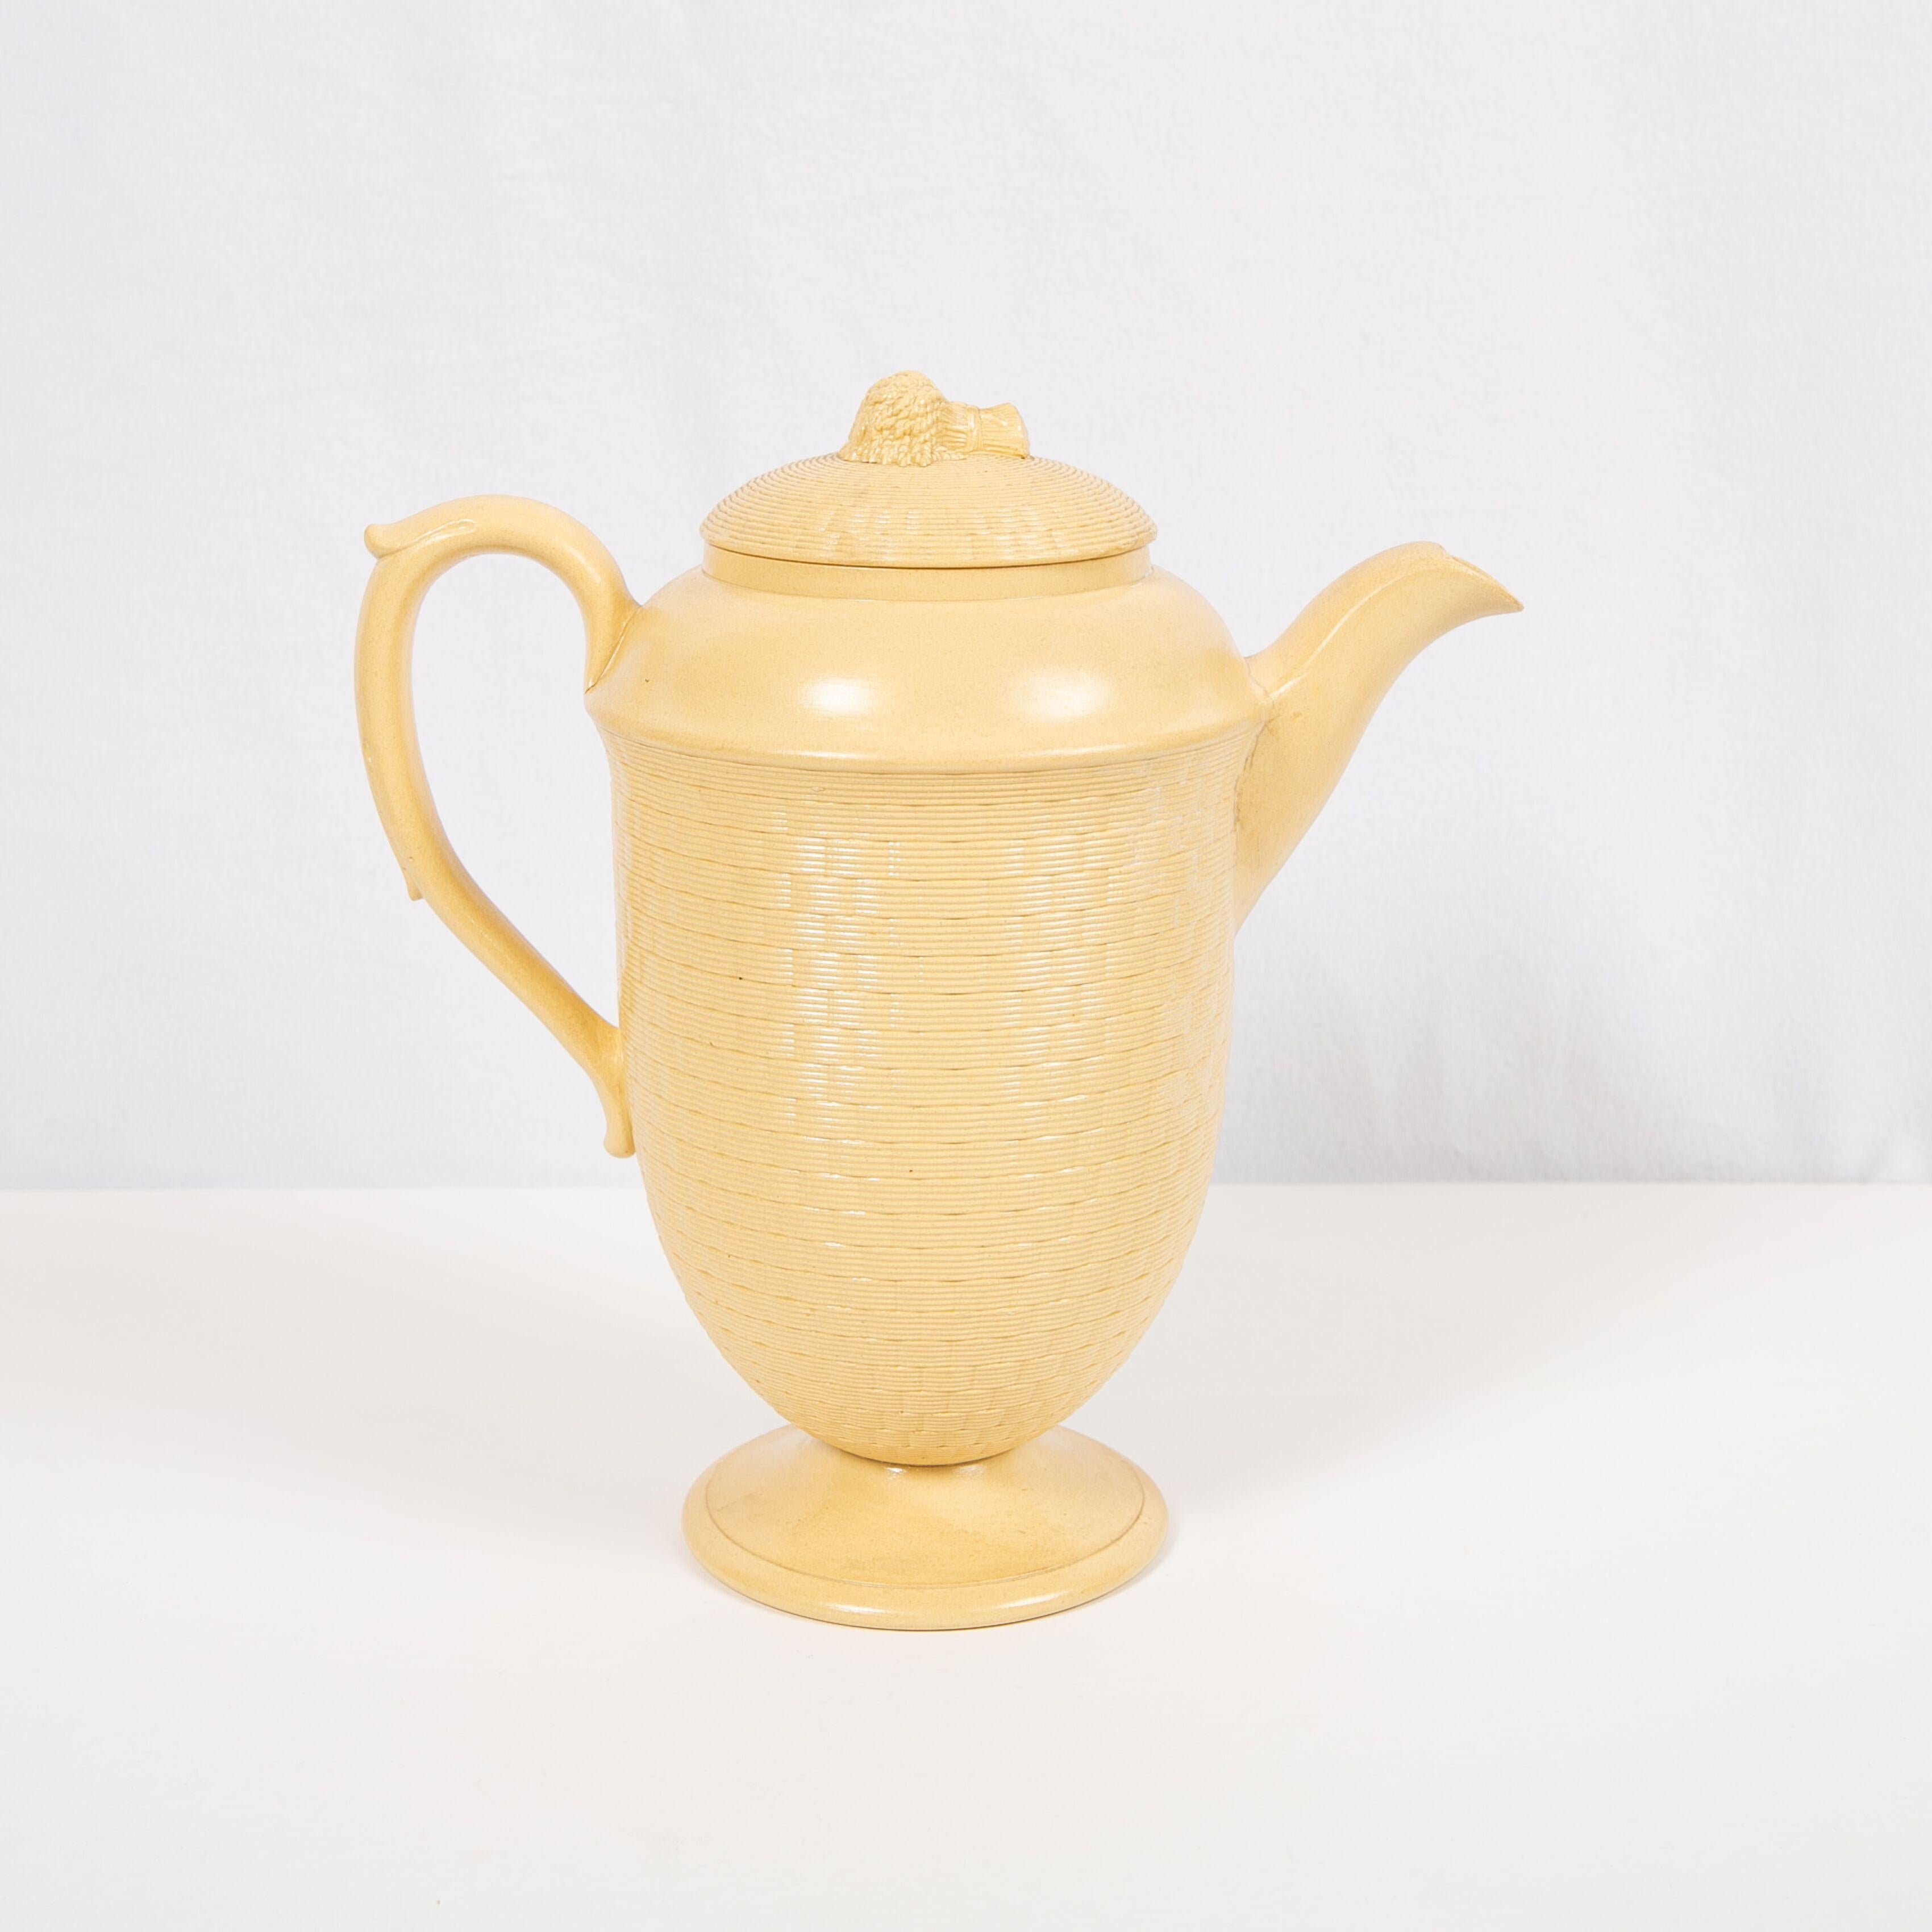 English Large Antique Wedgwood Coffee Pot of Glazed Cane-Yellow Stoneware, circa 1830